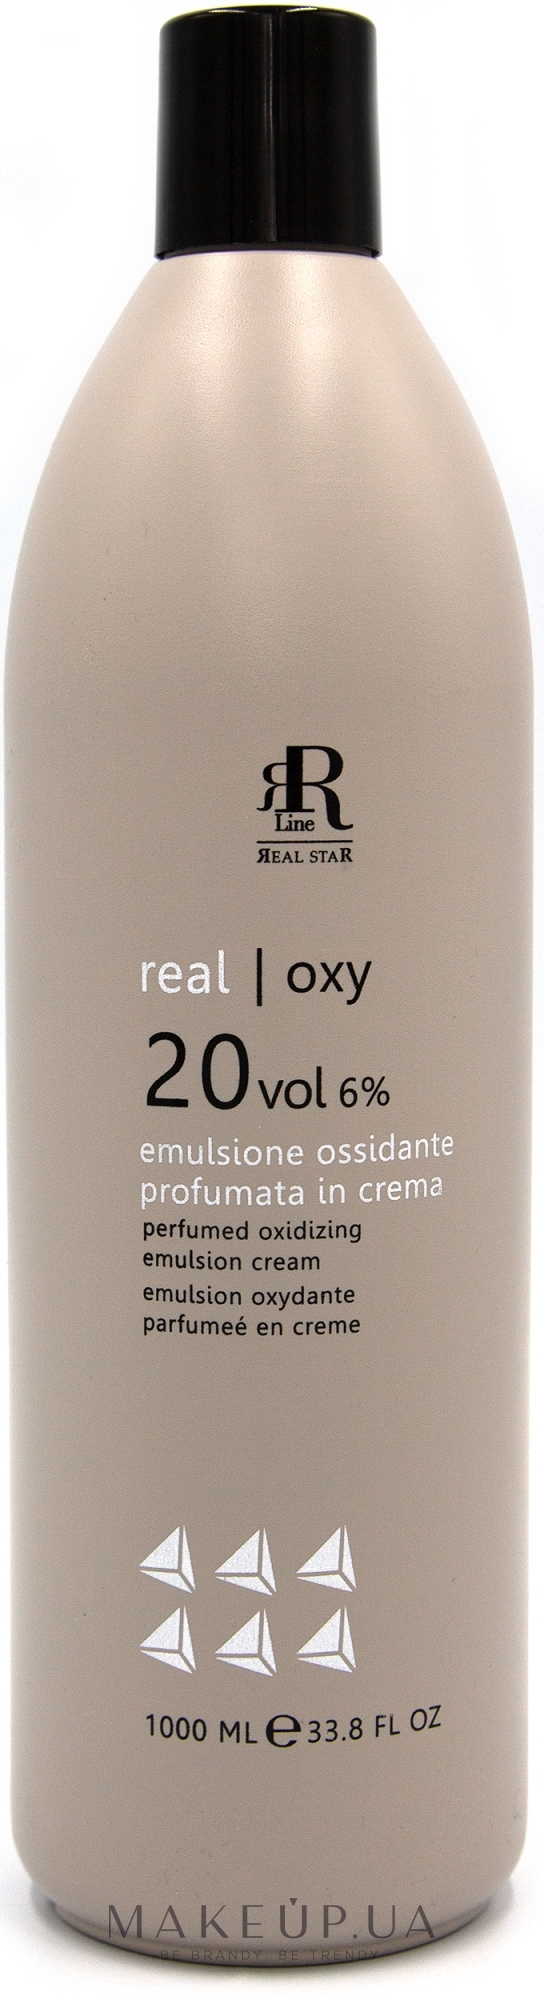 Парфюмированная окислительная эмульсия 6% - RR Line Parfymed Ossidante Emulsione Cream 6% 20 Vol — фото 1000ml